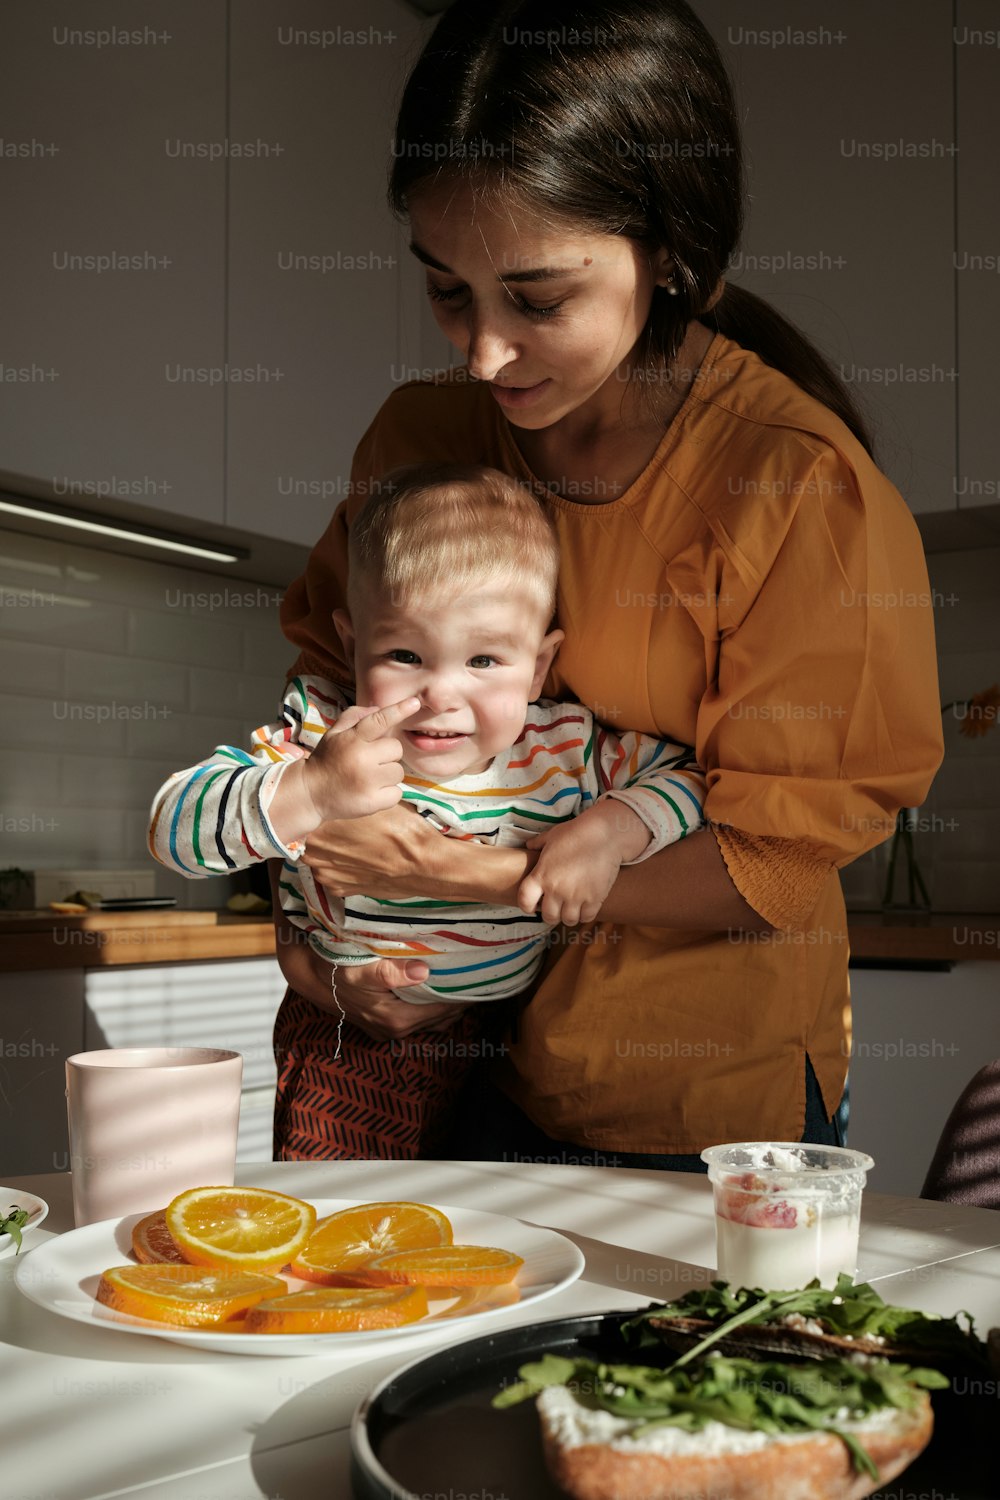 Una mujer sosteniendo a un bebé frente a un plato de comida